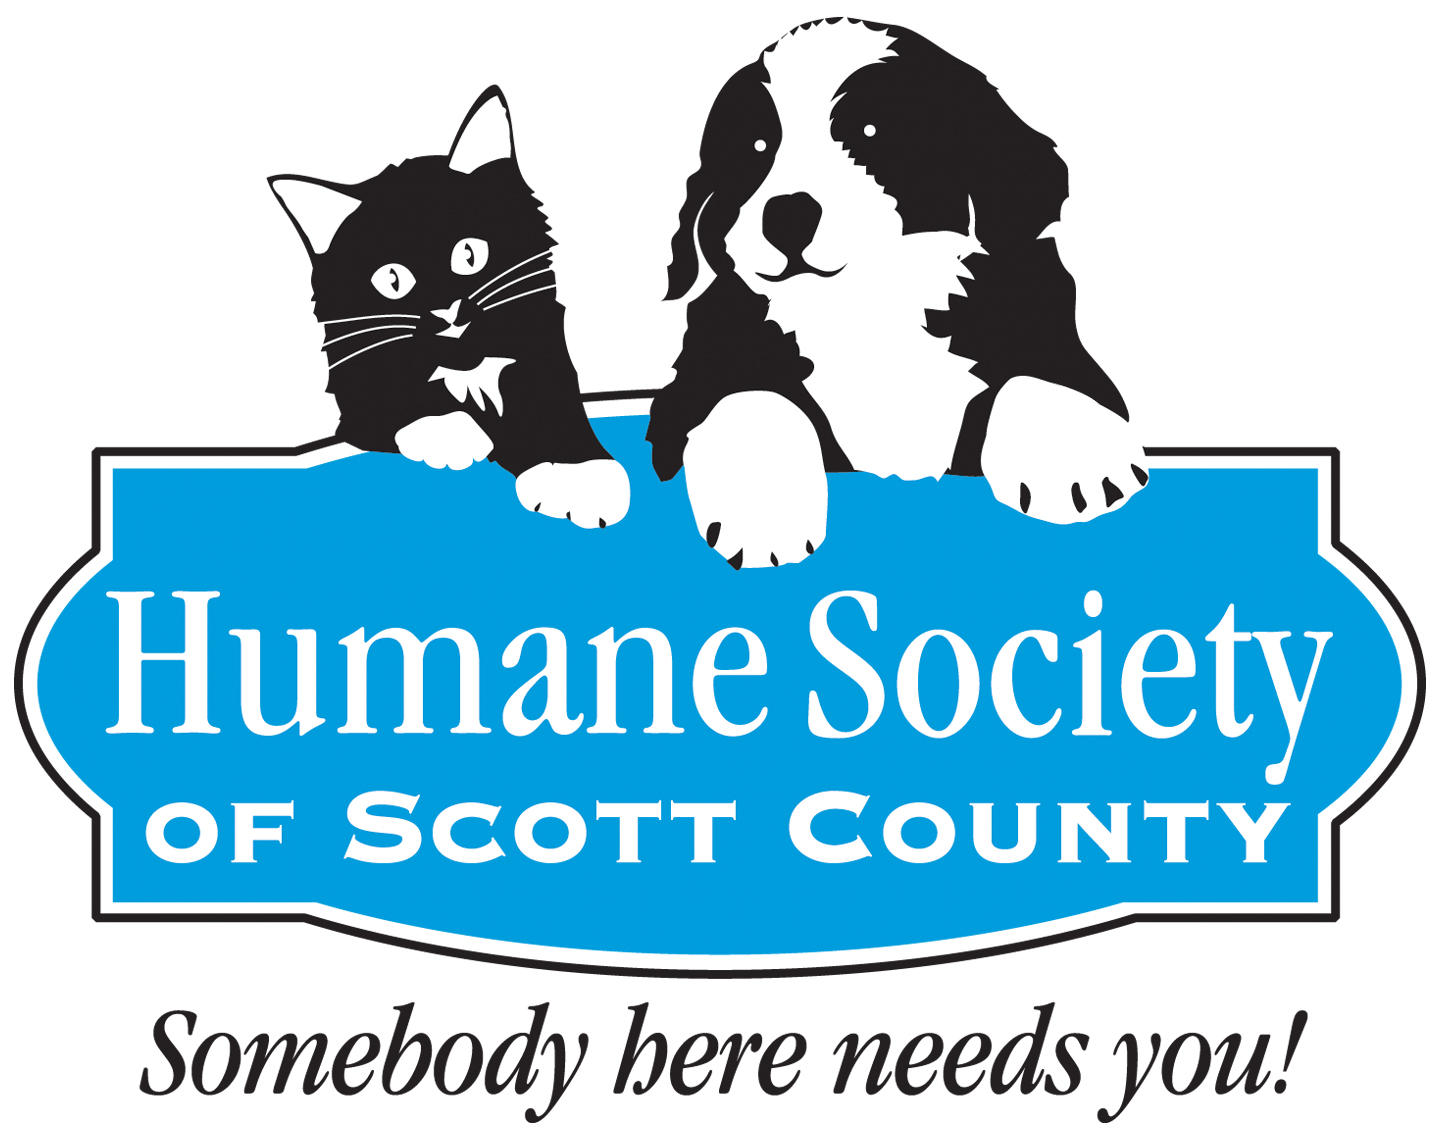 Humane Society of Scott County